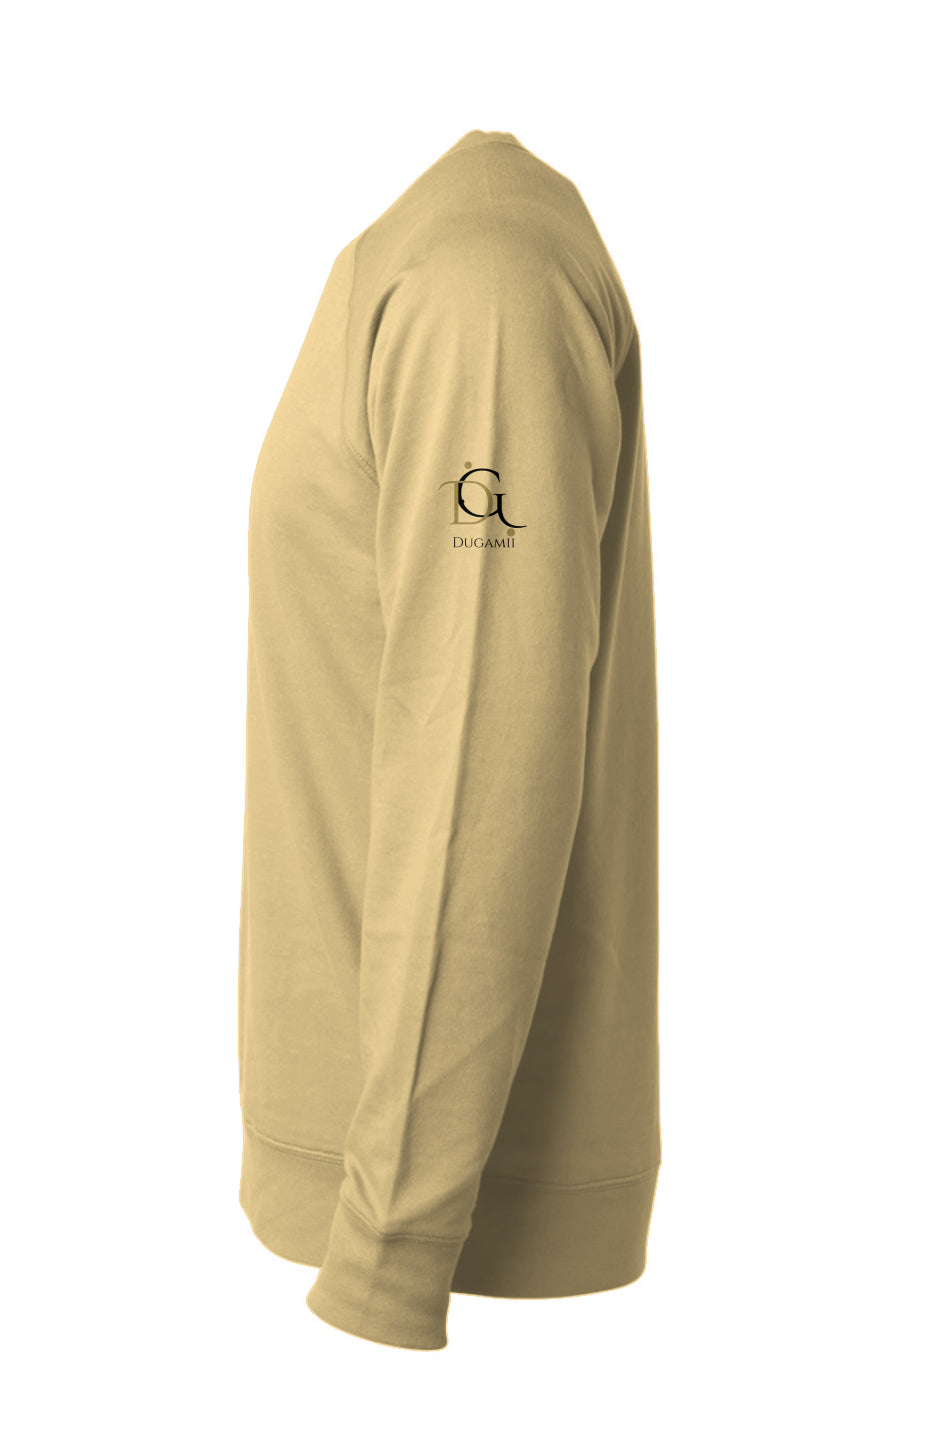 DuGamii "Inspired" Gold Crewneck Sweatshirt